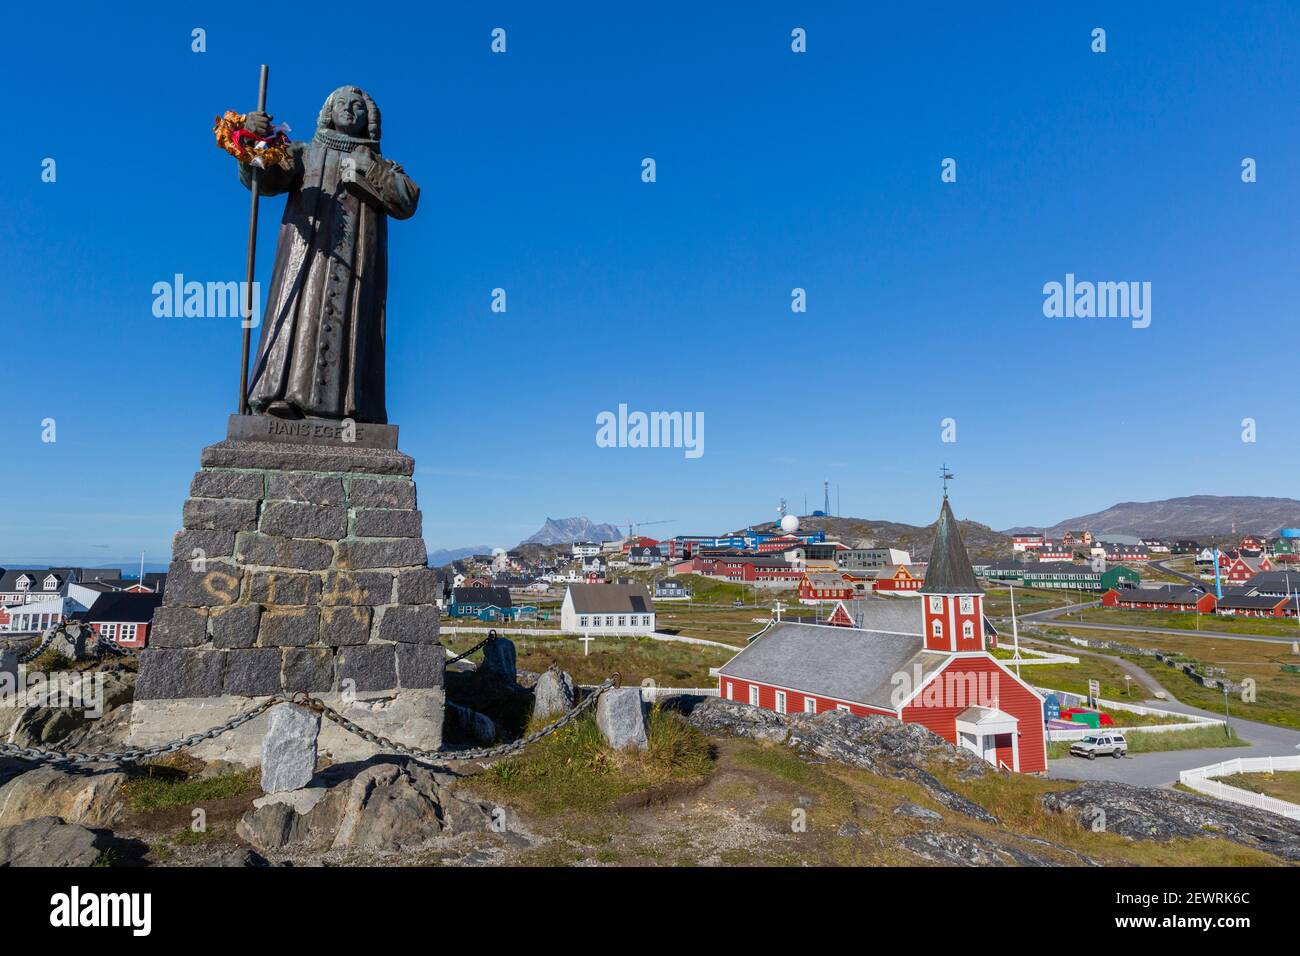 La statue de Hans Egede à Nuuk (Godthab), la capitale et la plus grande ville du Groenland, régions polaires Banque D'Images